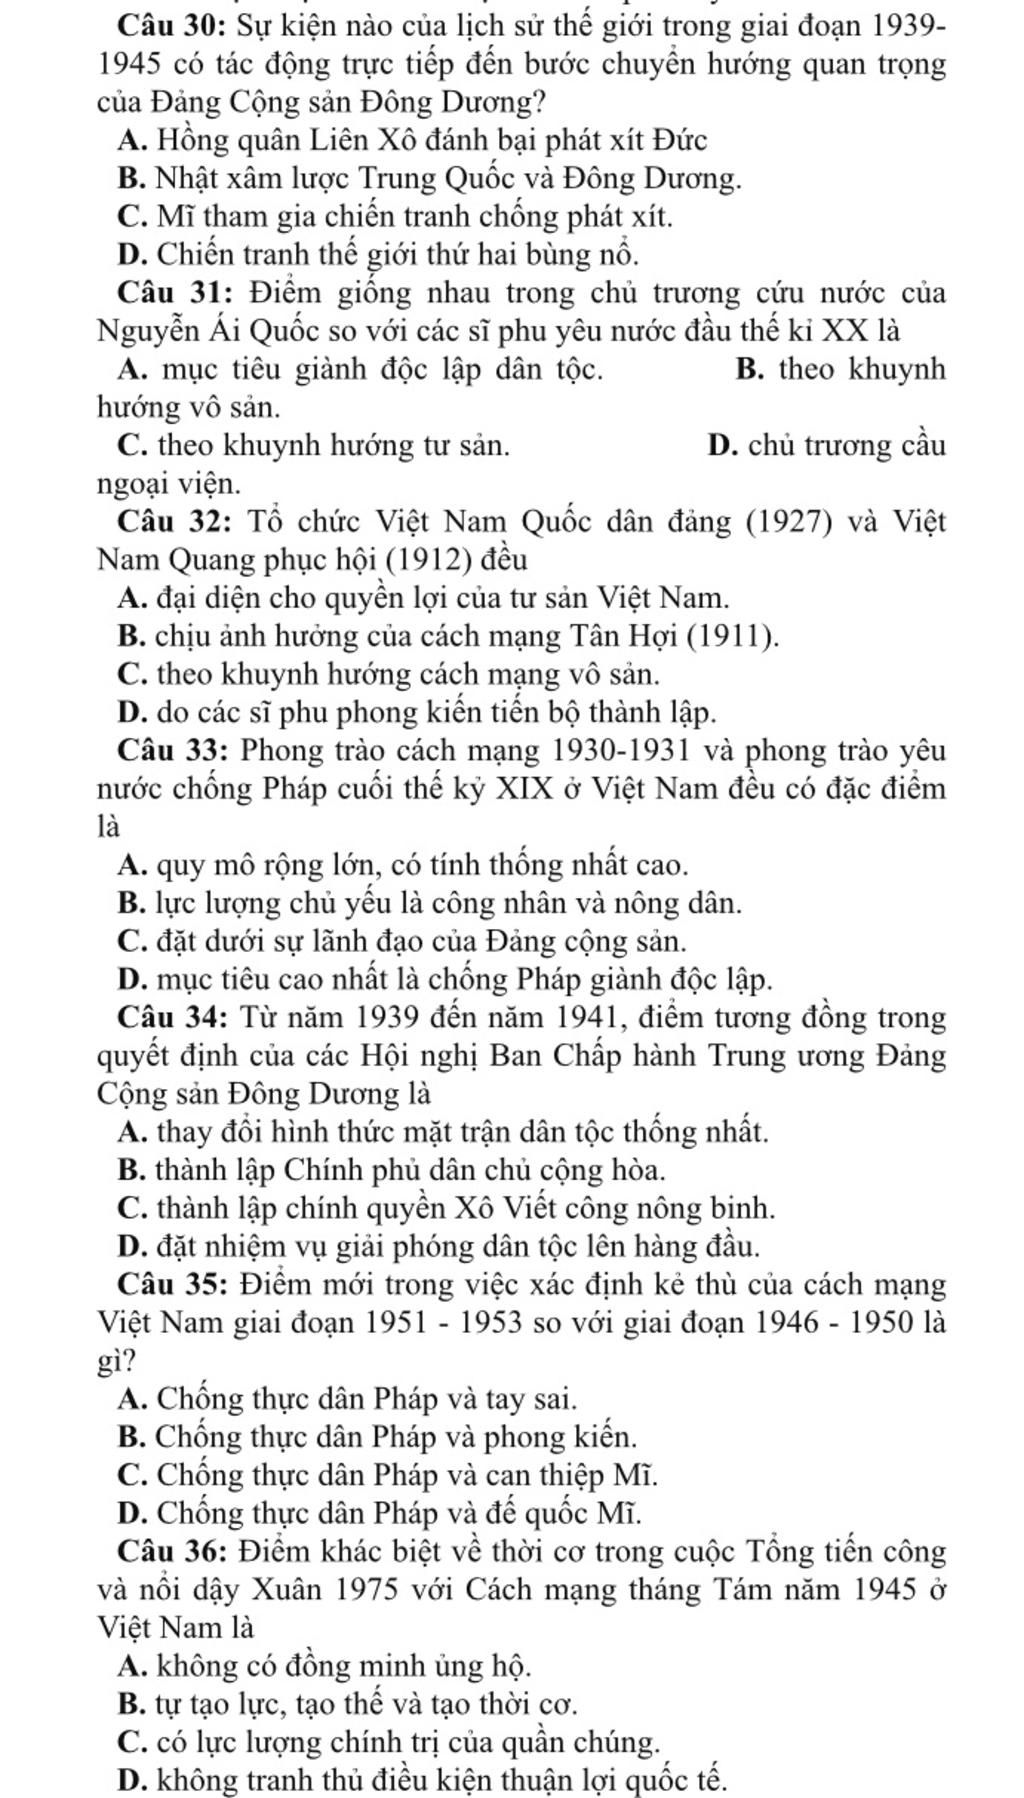 Tổng kết những sự kiện ảnh hưởng đến cách mạng Việt Nam qua các giai đoạn lịch sử